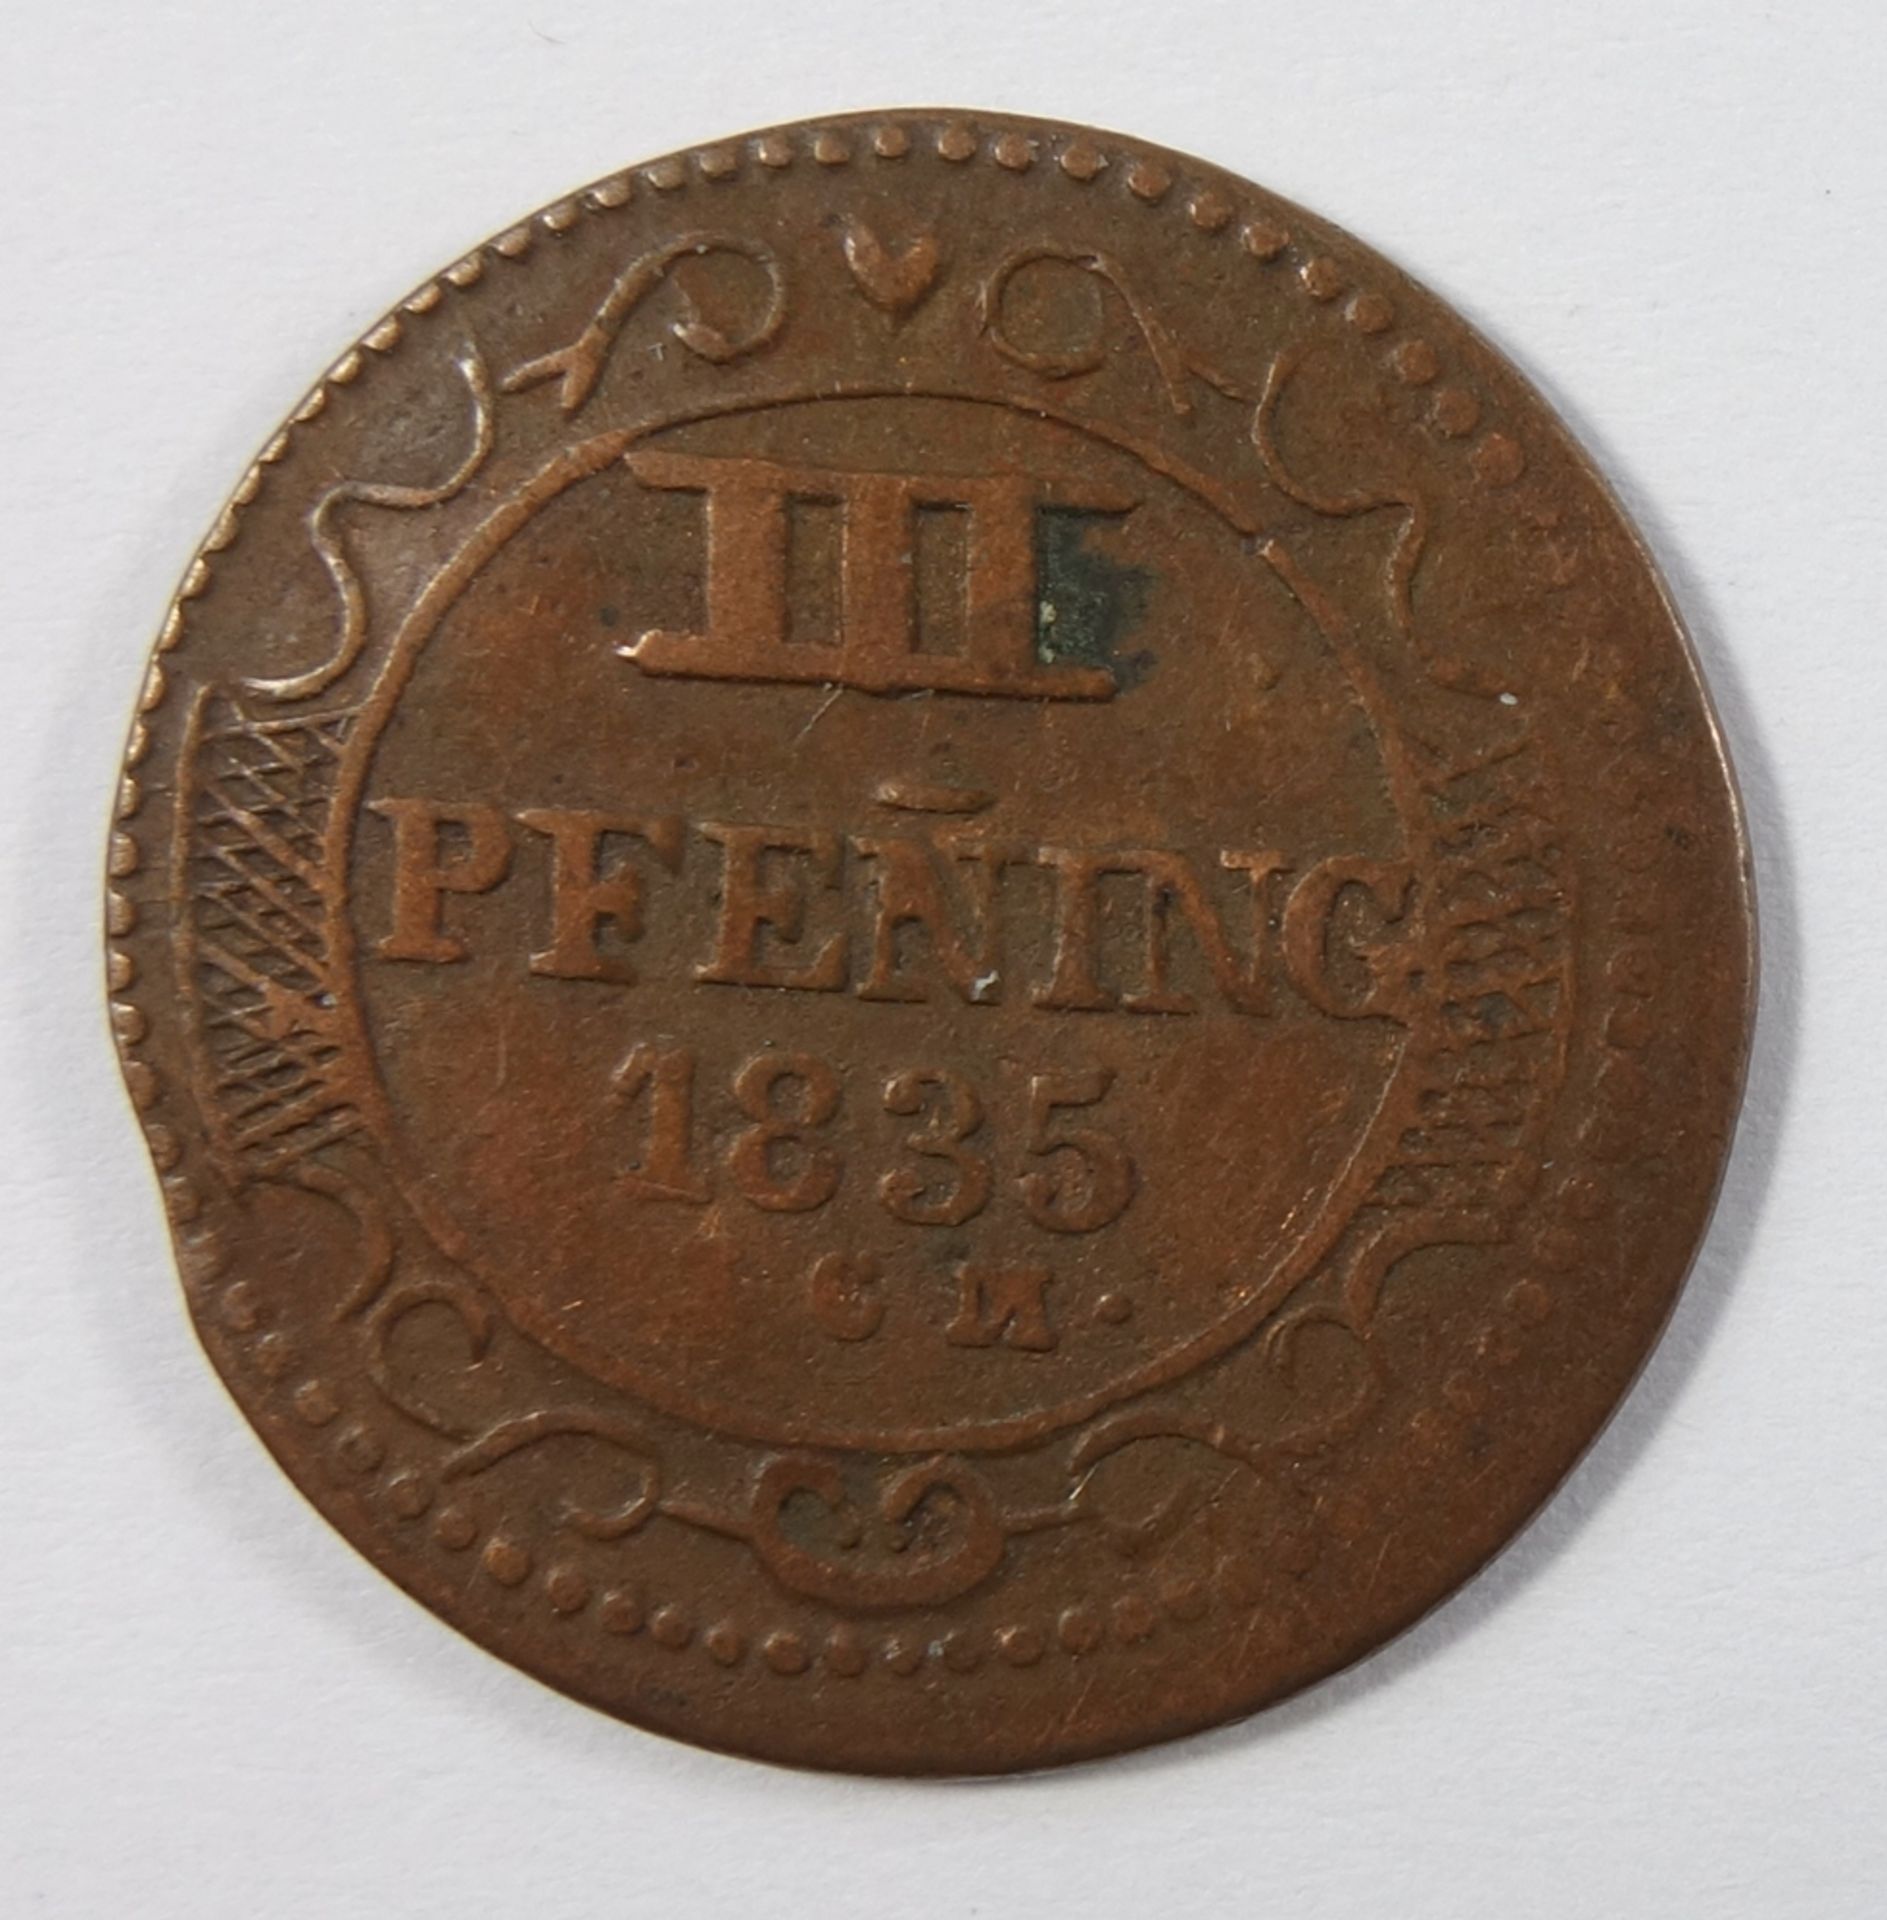 3 Pfennig 1835, ICM Mecklenburg-Wismar, ss3 pfennig 1835, ICM Mecklenburg-Wismar - Bild 2 aus 2